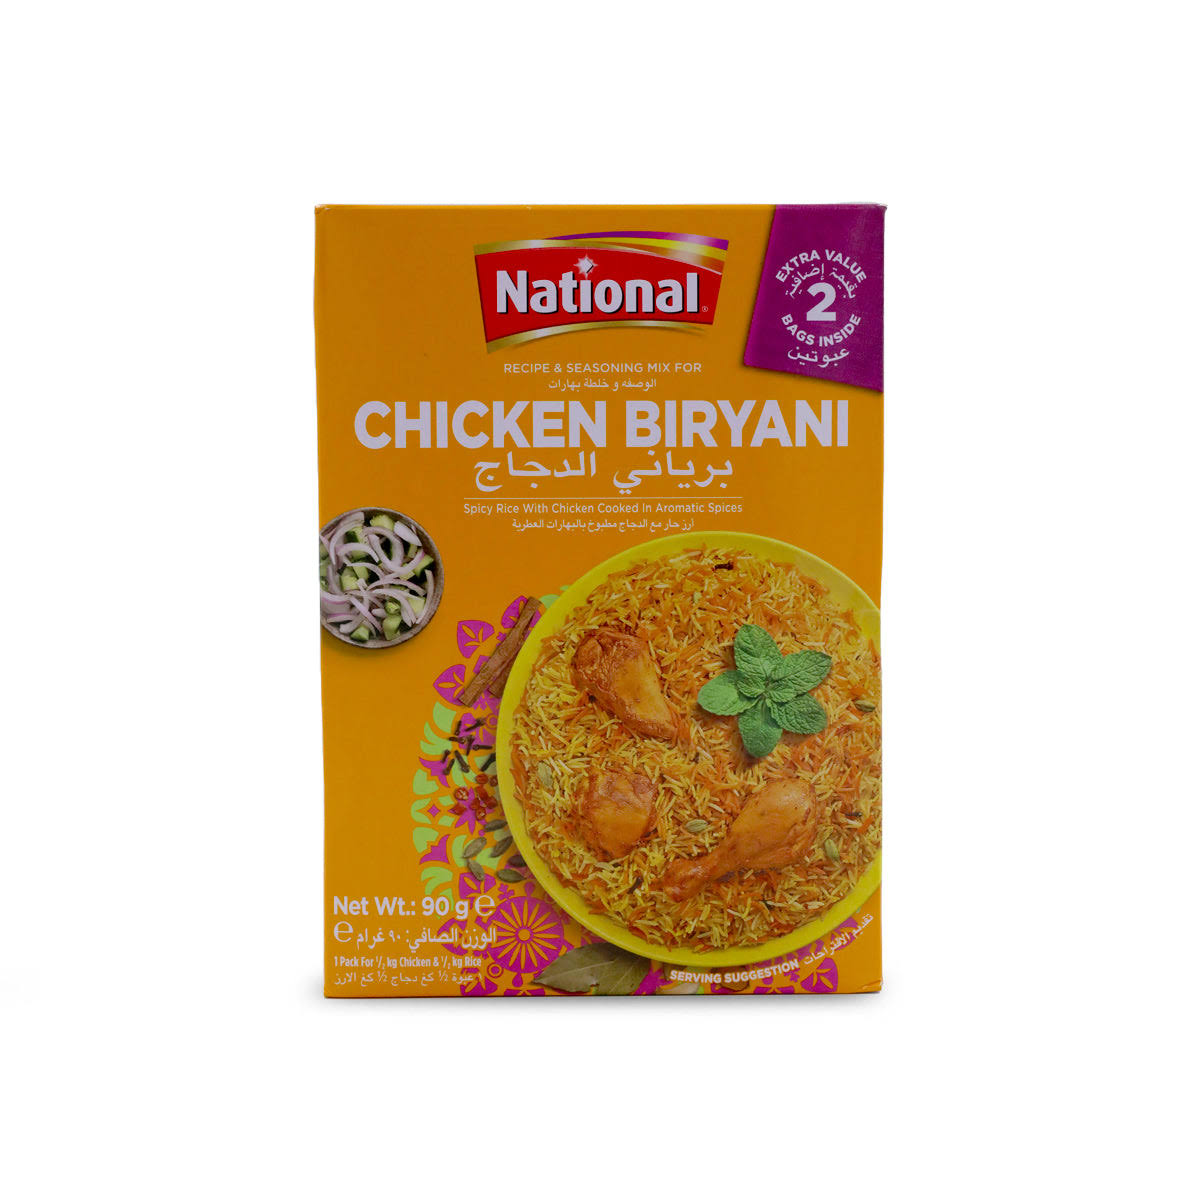 National Chicken Biryani